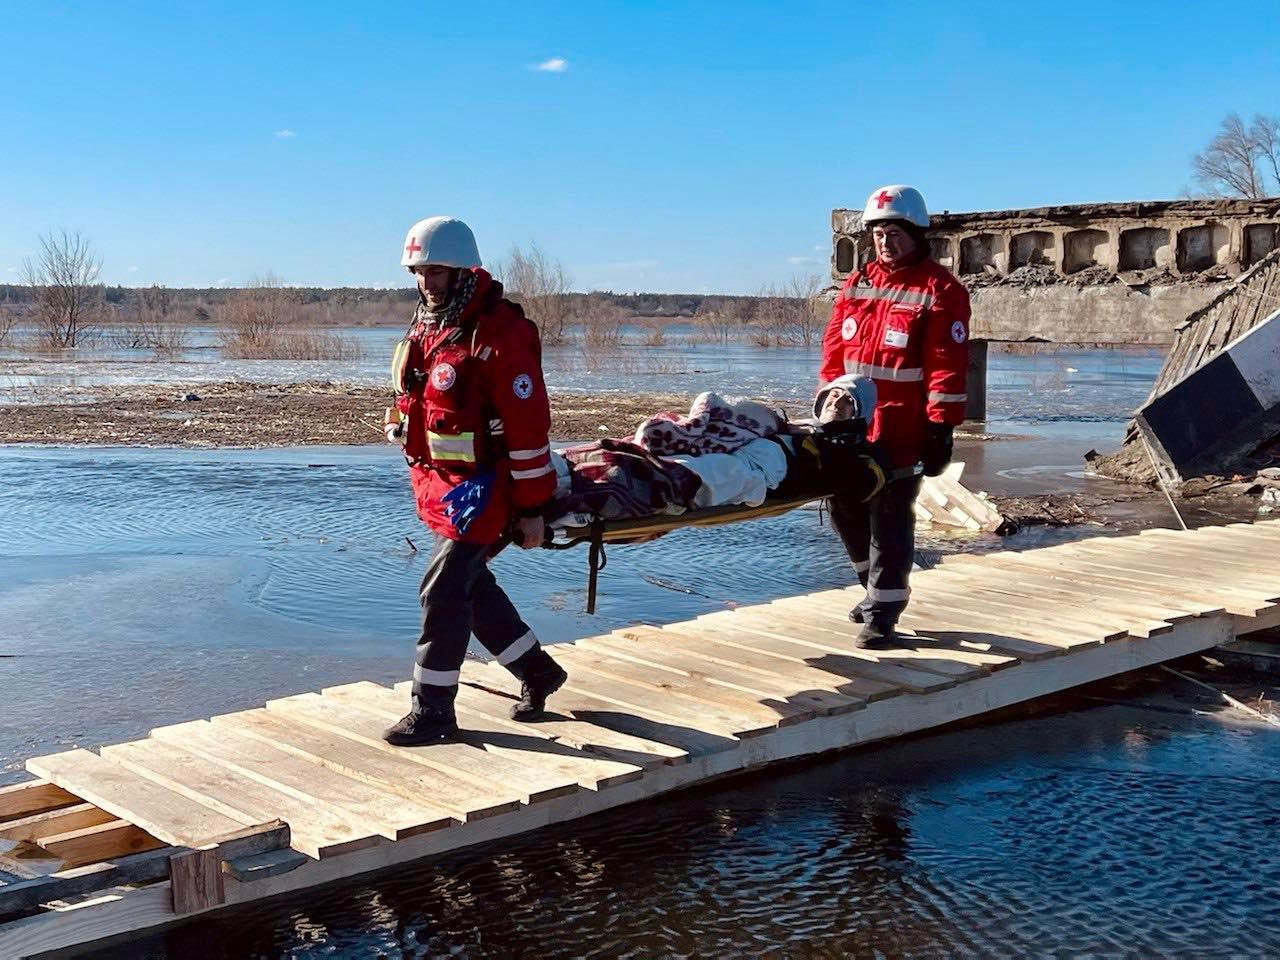 Zwei Freiwillige des ukrainischen Roten Kreuzes evakuieren eine verletzte Person, die mit einer Decke auf einer Trage liegt. Sie überqueren eine provisorische Holzbrücke. Die beiden Freiwilligen tragen den weißen Helm und die rote Jacke des Roten Kreuzes.